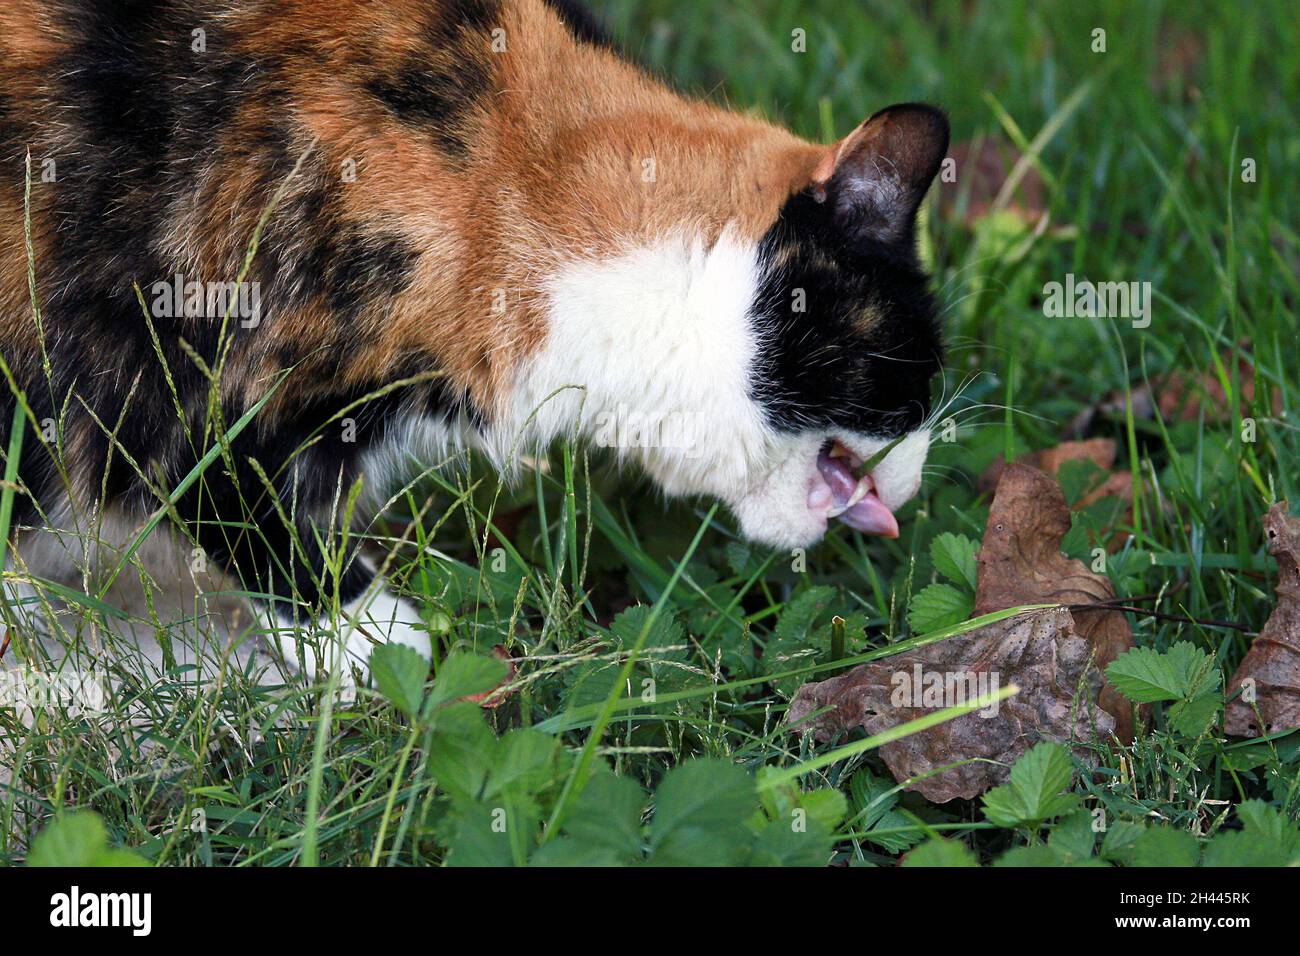 Un gato calico come hierba medicinalmente en verano Foto de stock